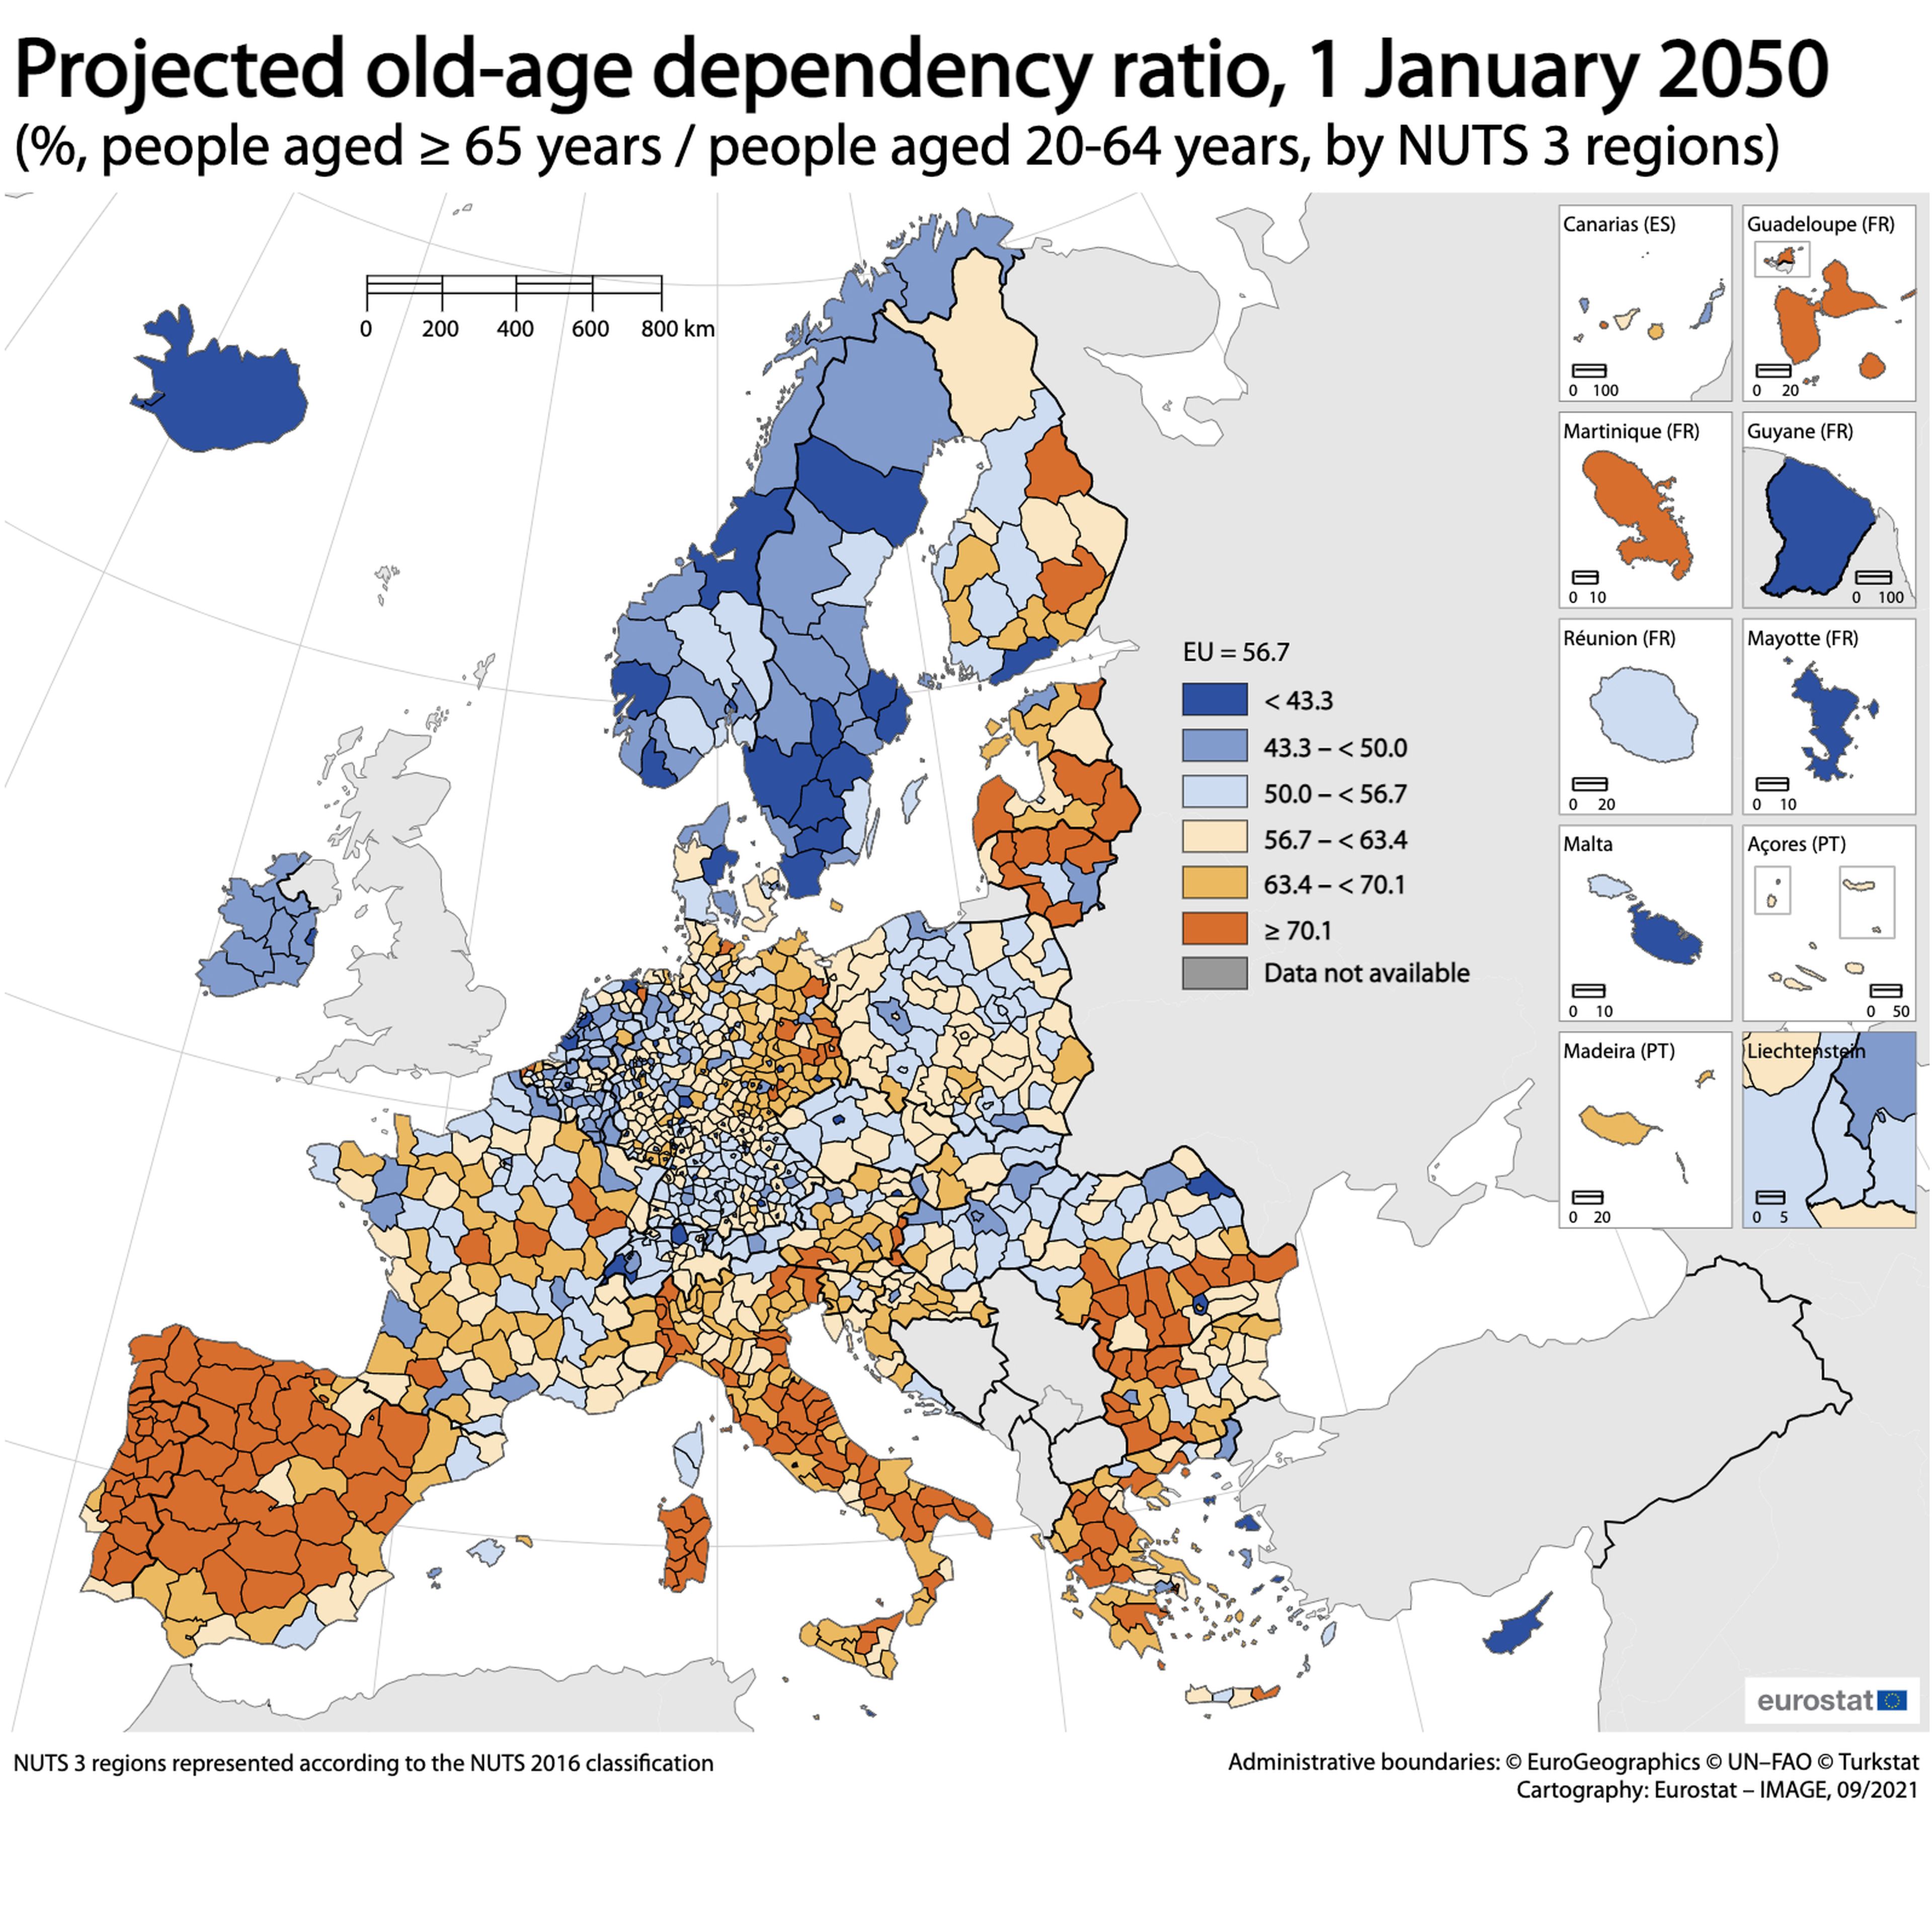 Previsión de Eurostat sobre la tasa de dependencia en la Unión Europea en 2050, repartido por provincias